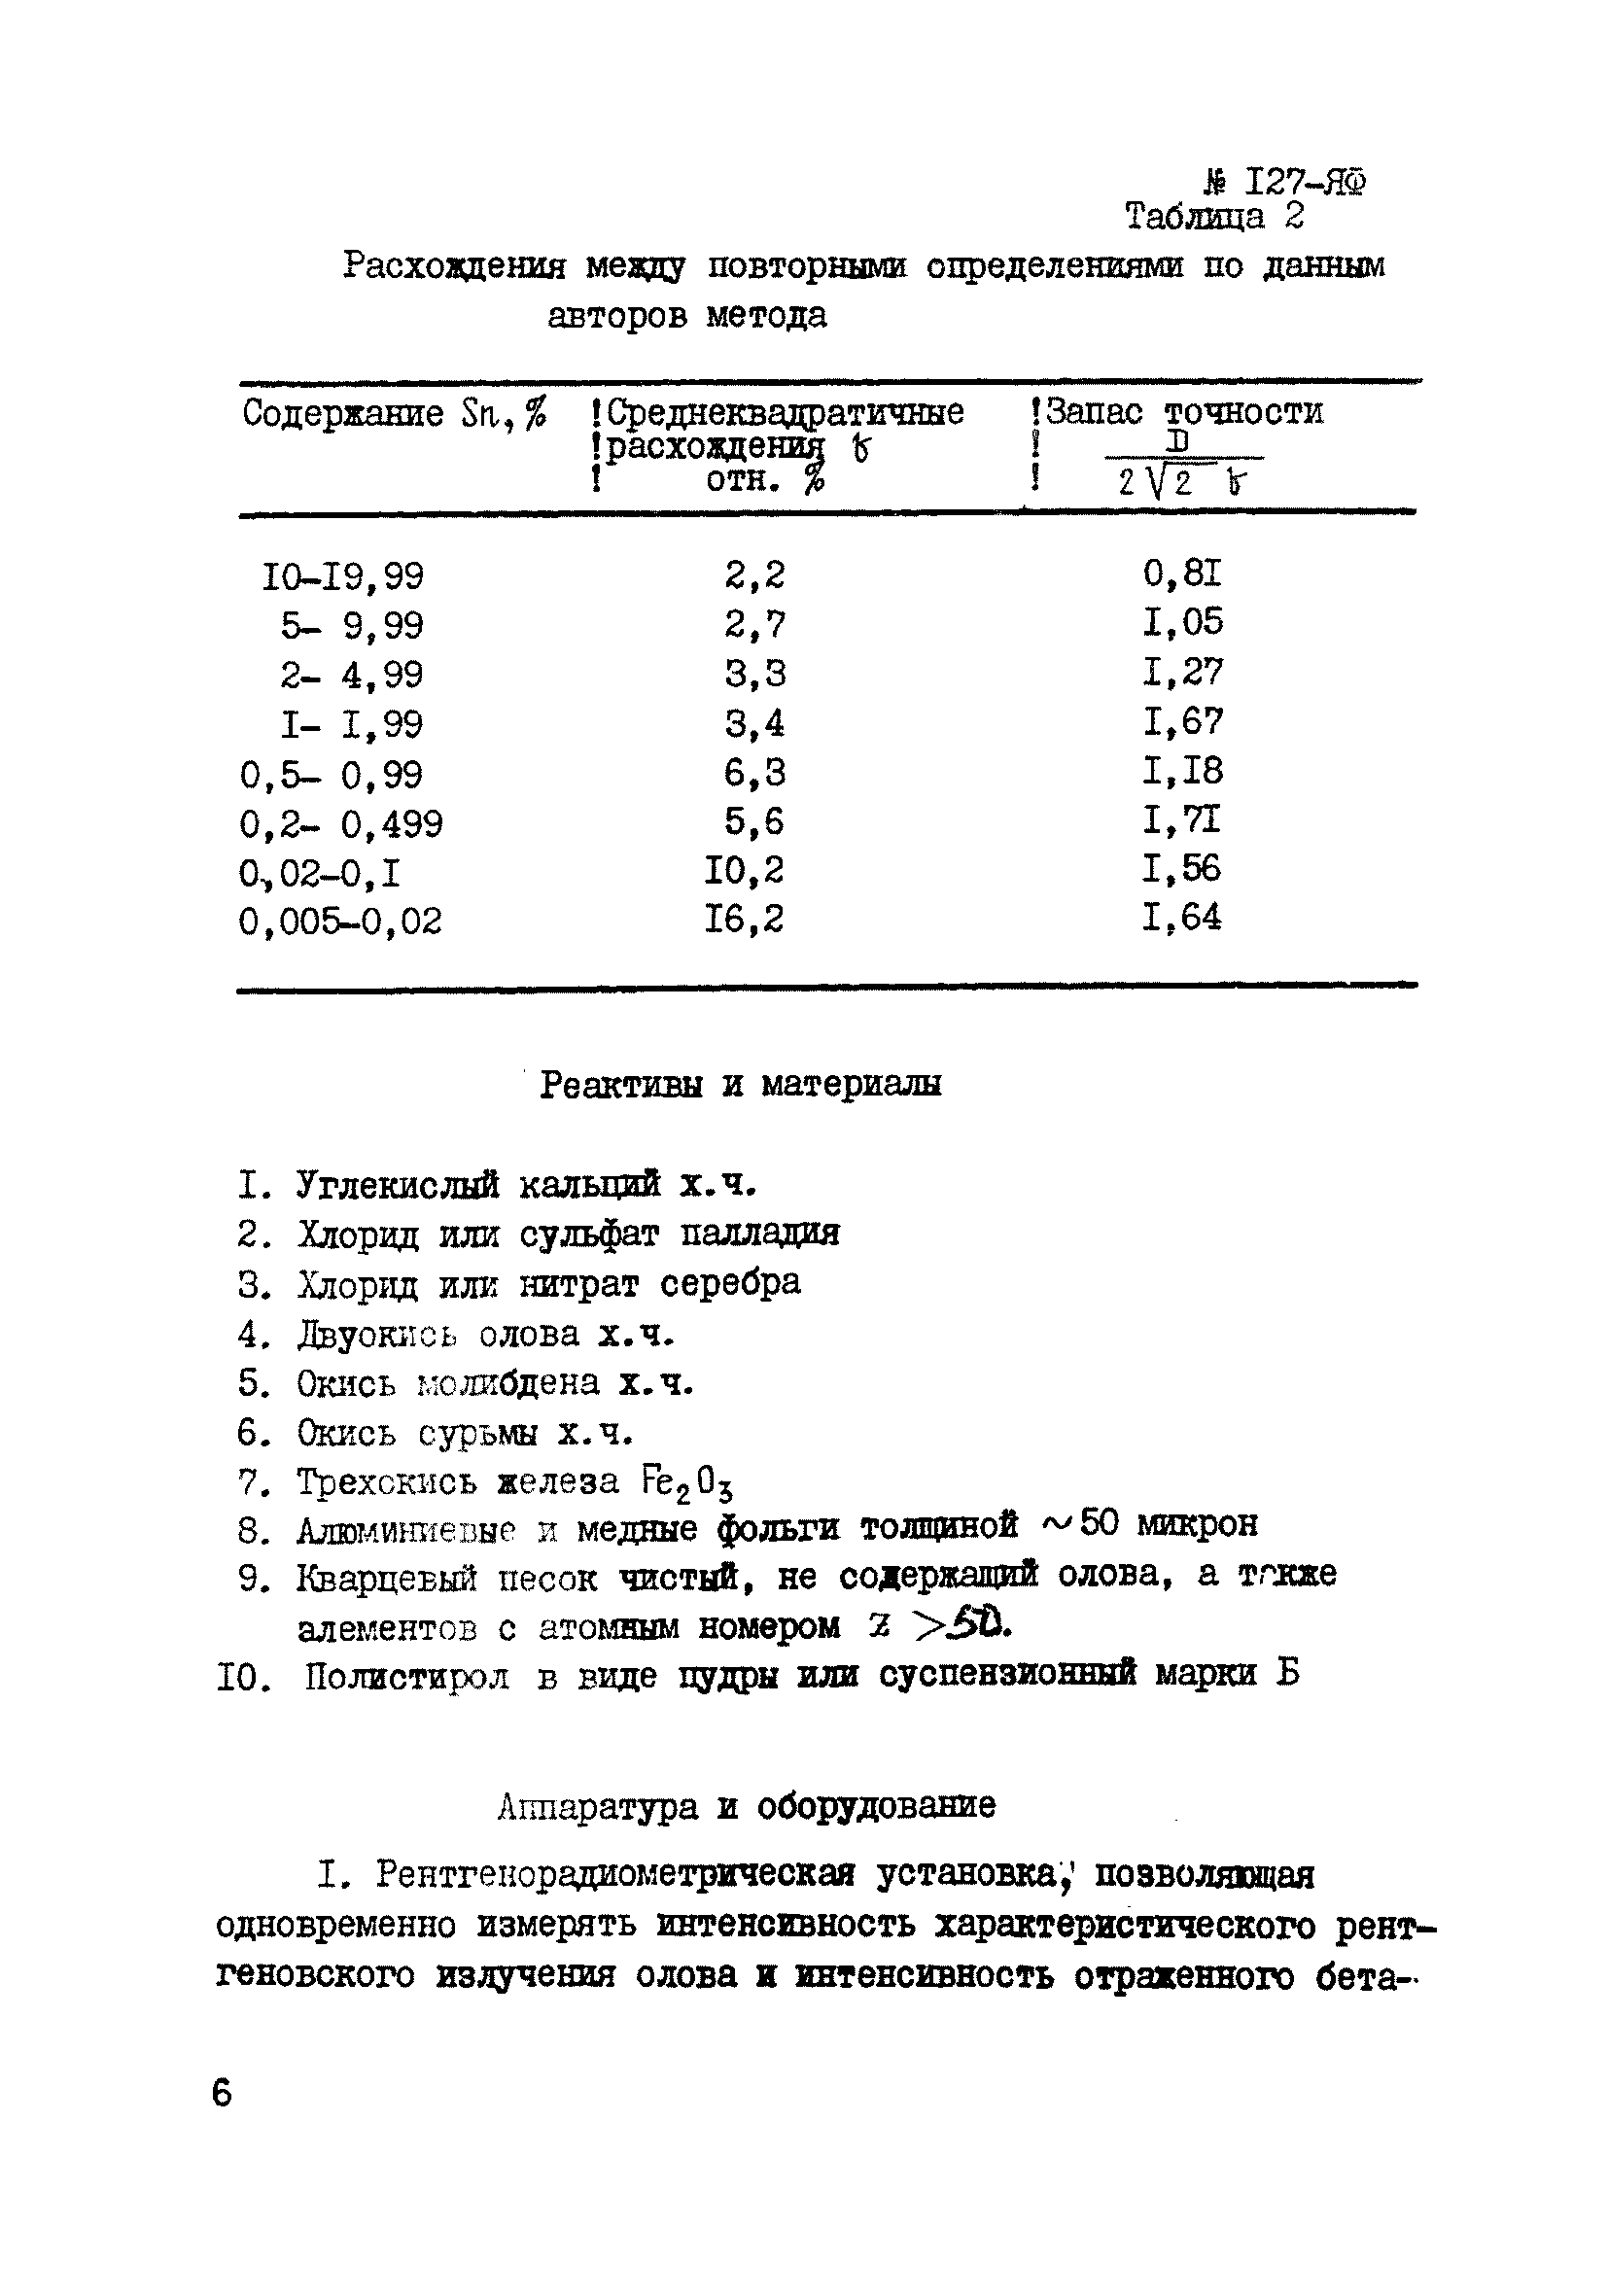 Инструкция НСАМ 127-ЯФ